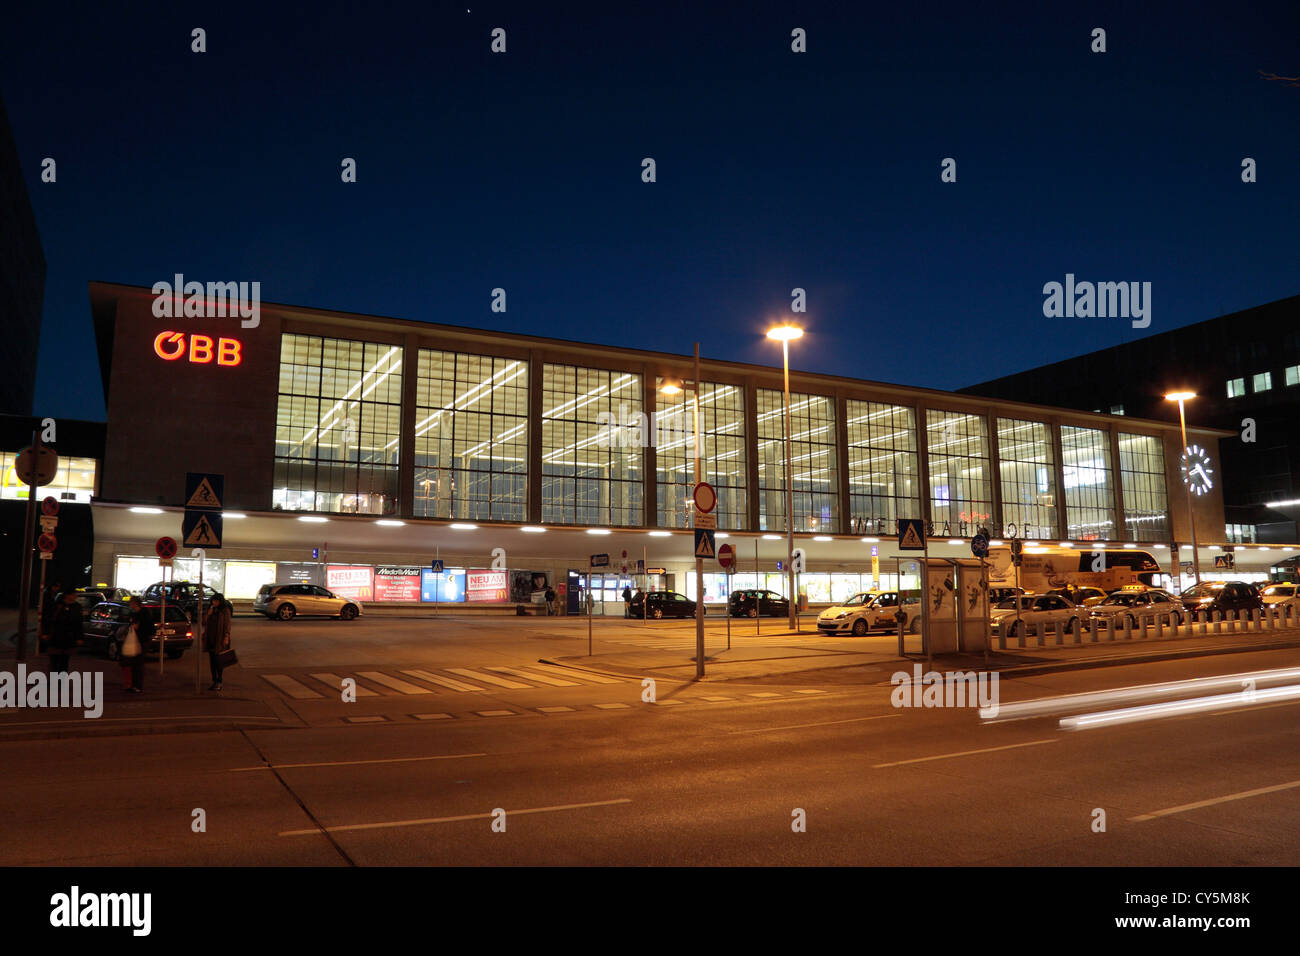 Compte tenu de la soirée externe entrée principale de Wien Westbahnhof (gare de l'ouest de Vienne) Vienne, Autriche. Banque D'Images